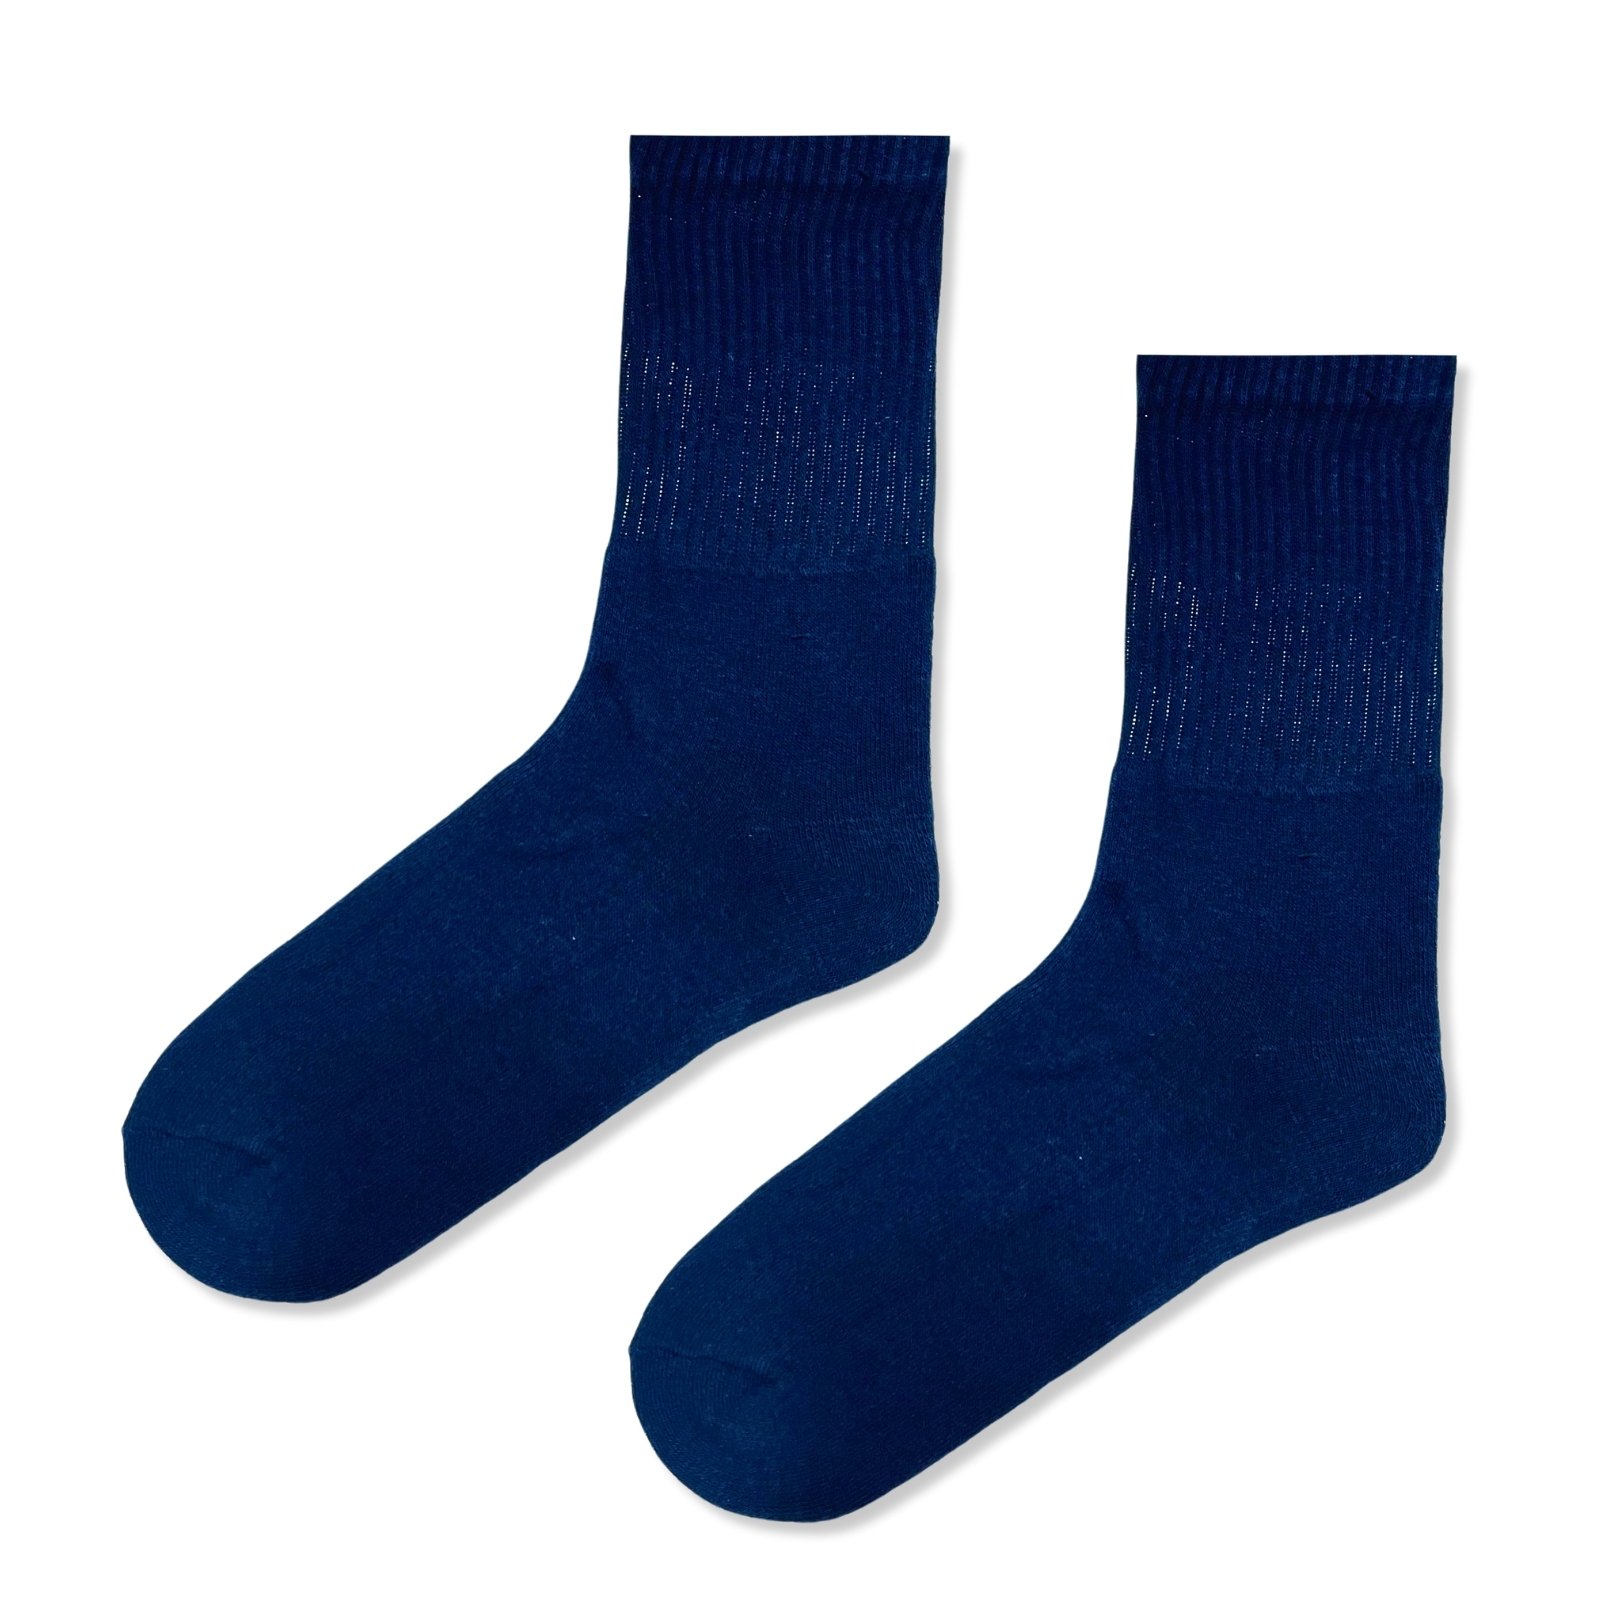 Düz Lacivert Erkek Havlu Çorap (42-47)